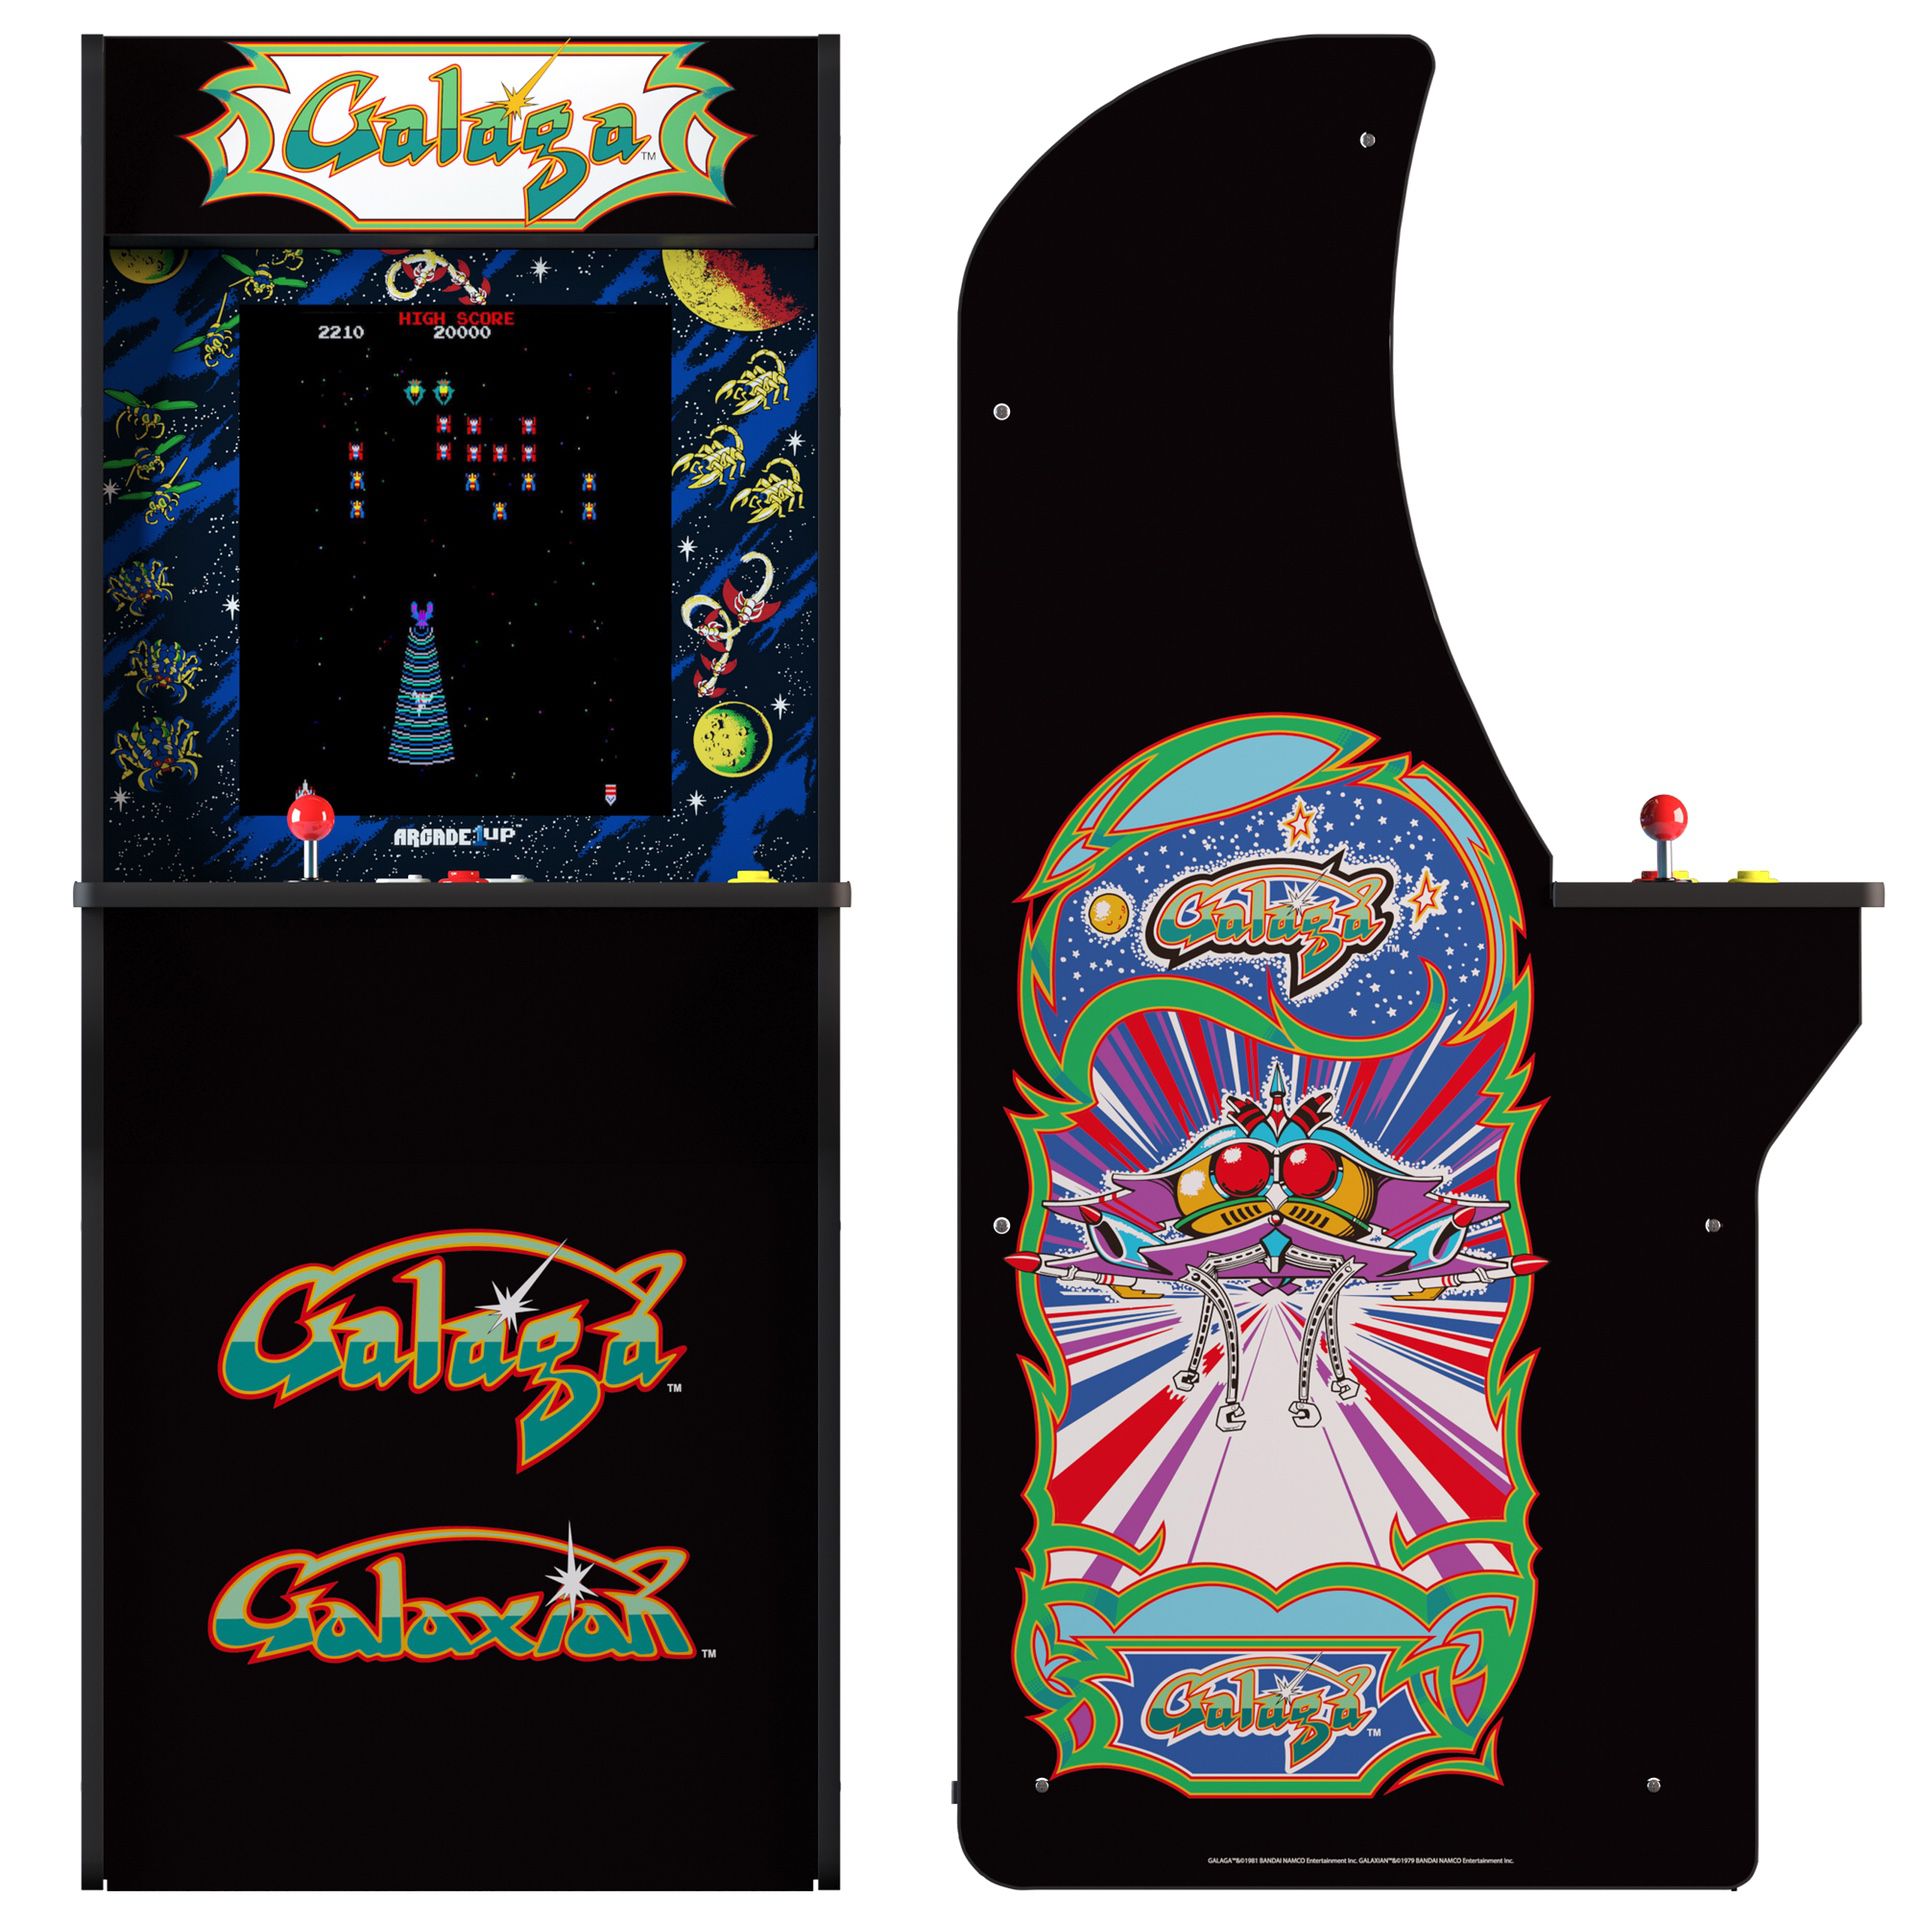 Galaga galaxian arcade machine arcade box video game console arcade cabinet two games